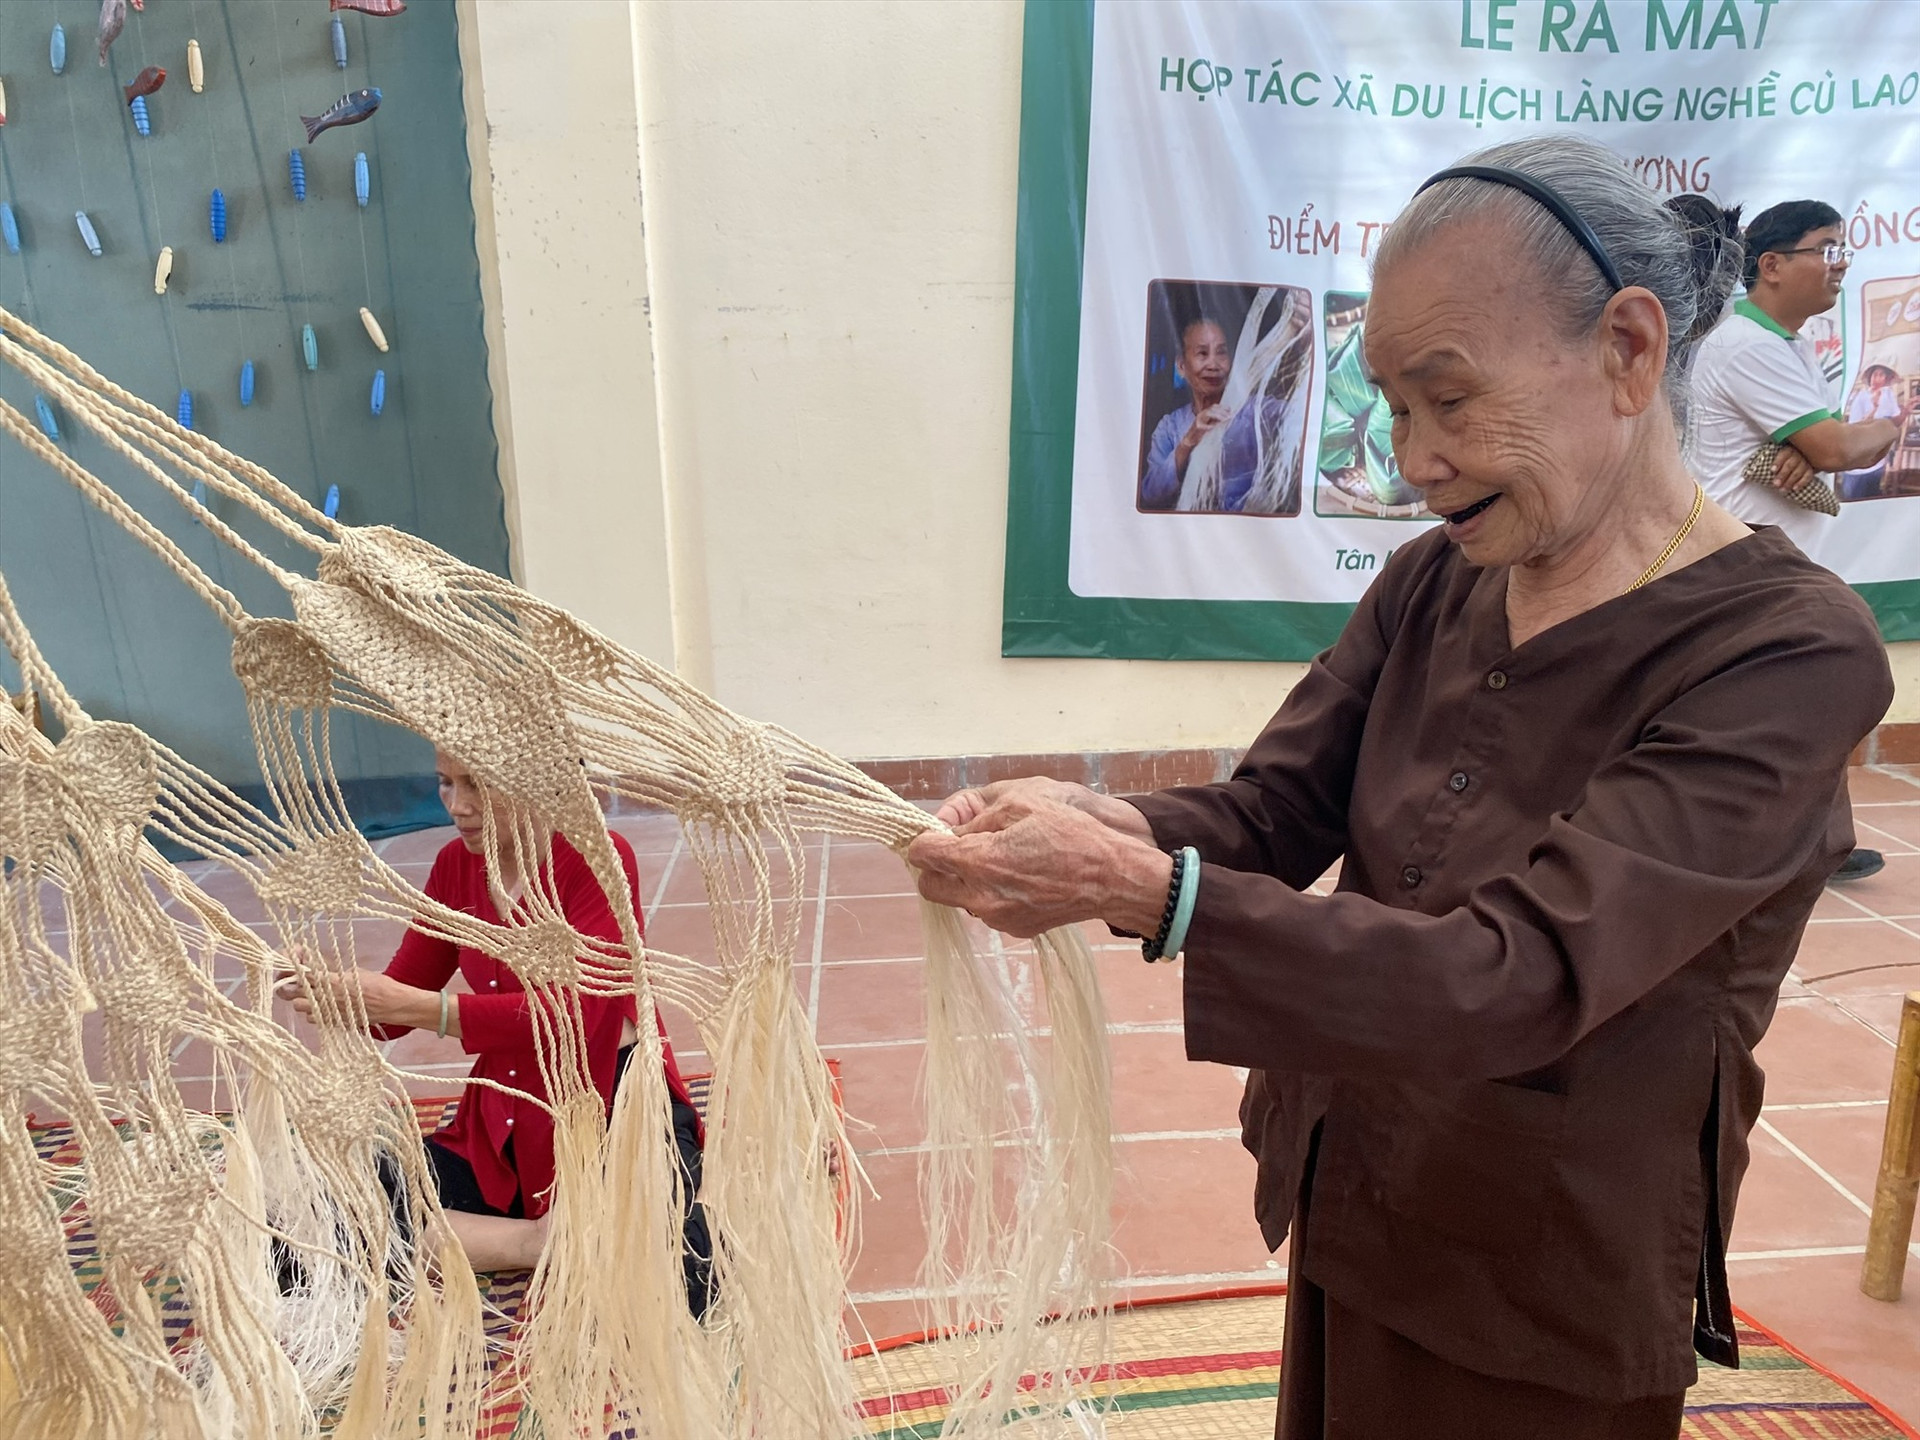 Sản phẩm đan võng ngô đồng được xem là điểm nhấn của tour du lịch xanh Cù Lao Chàm.Ảnh: V.L